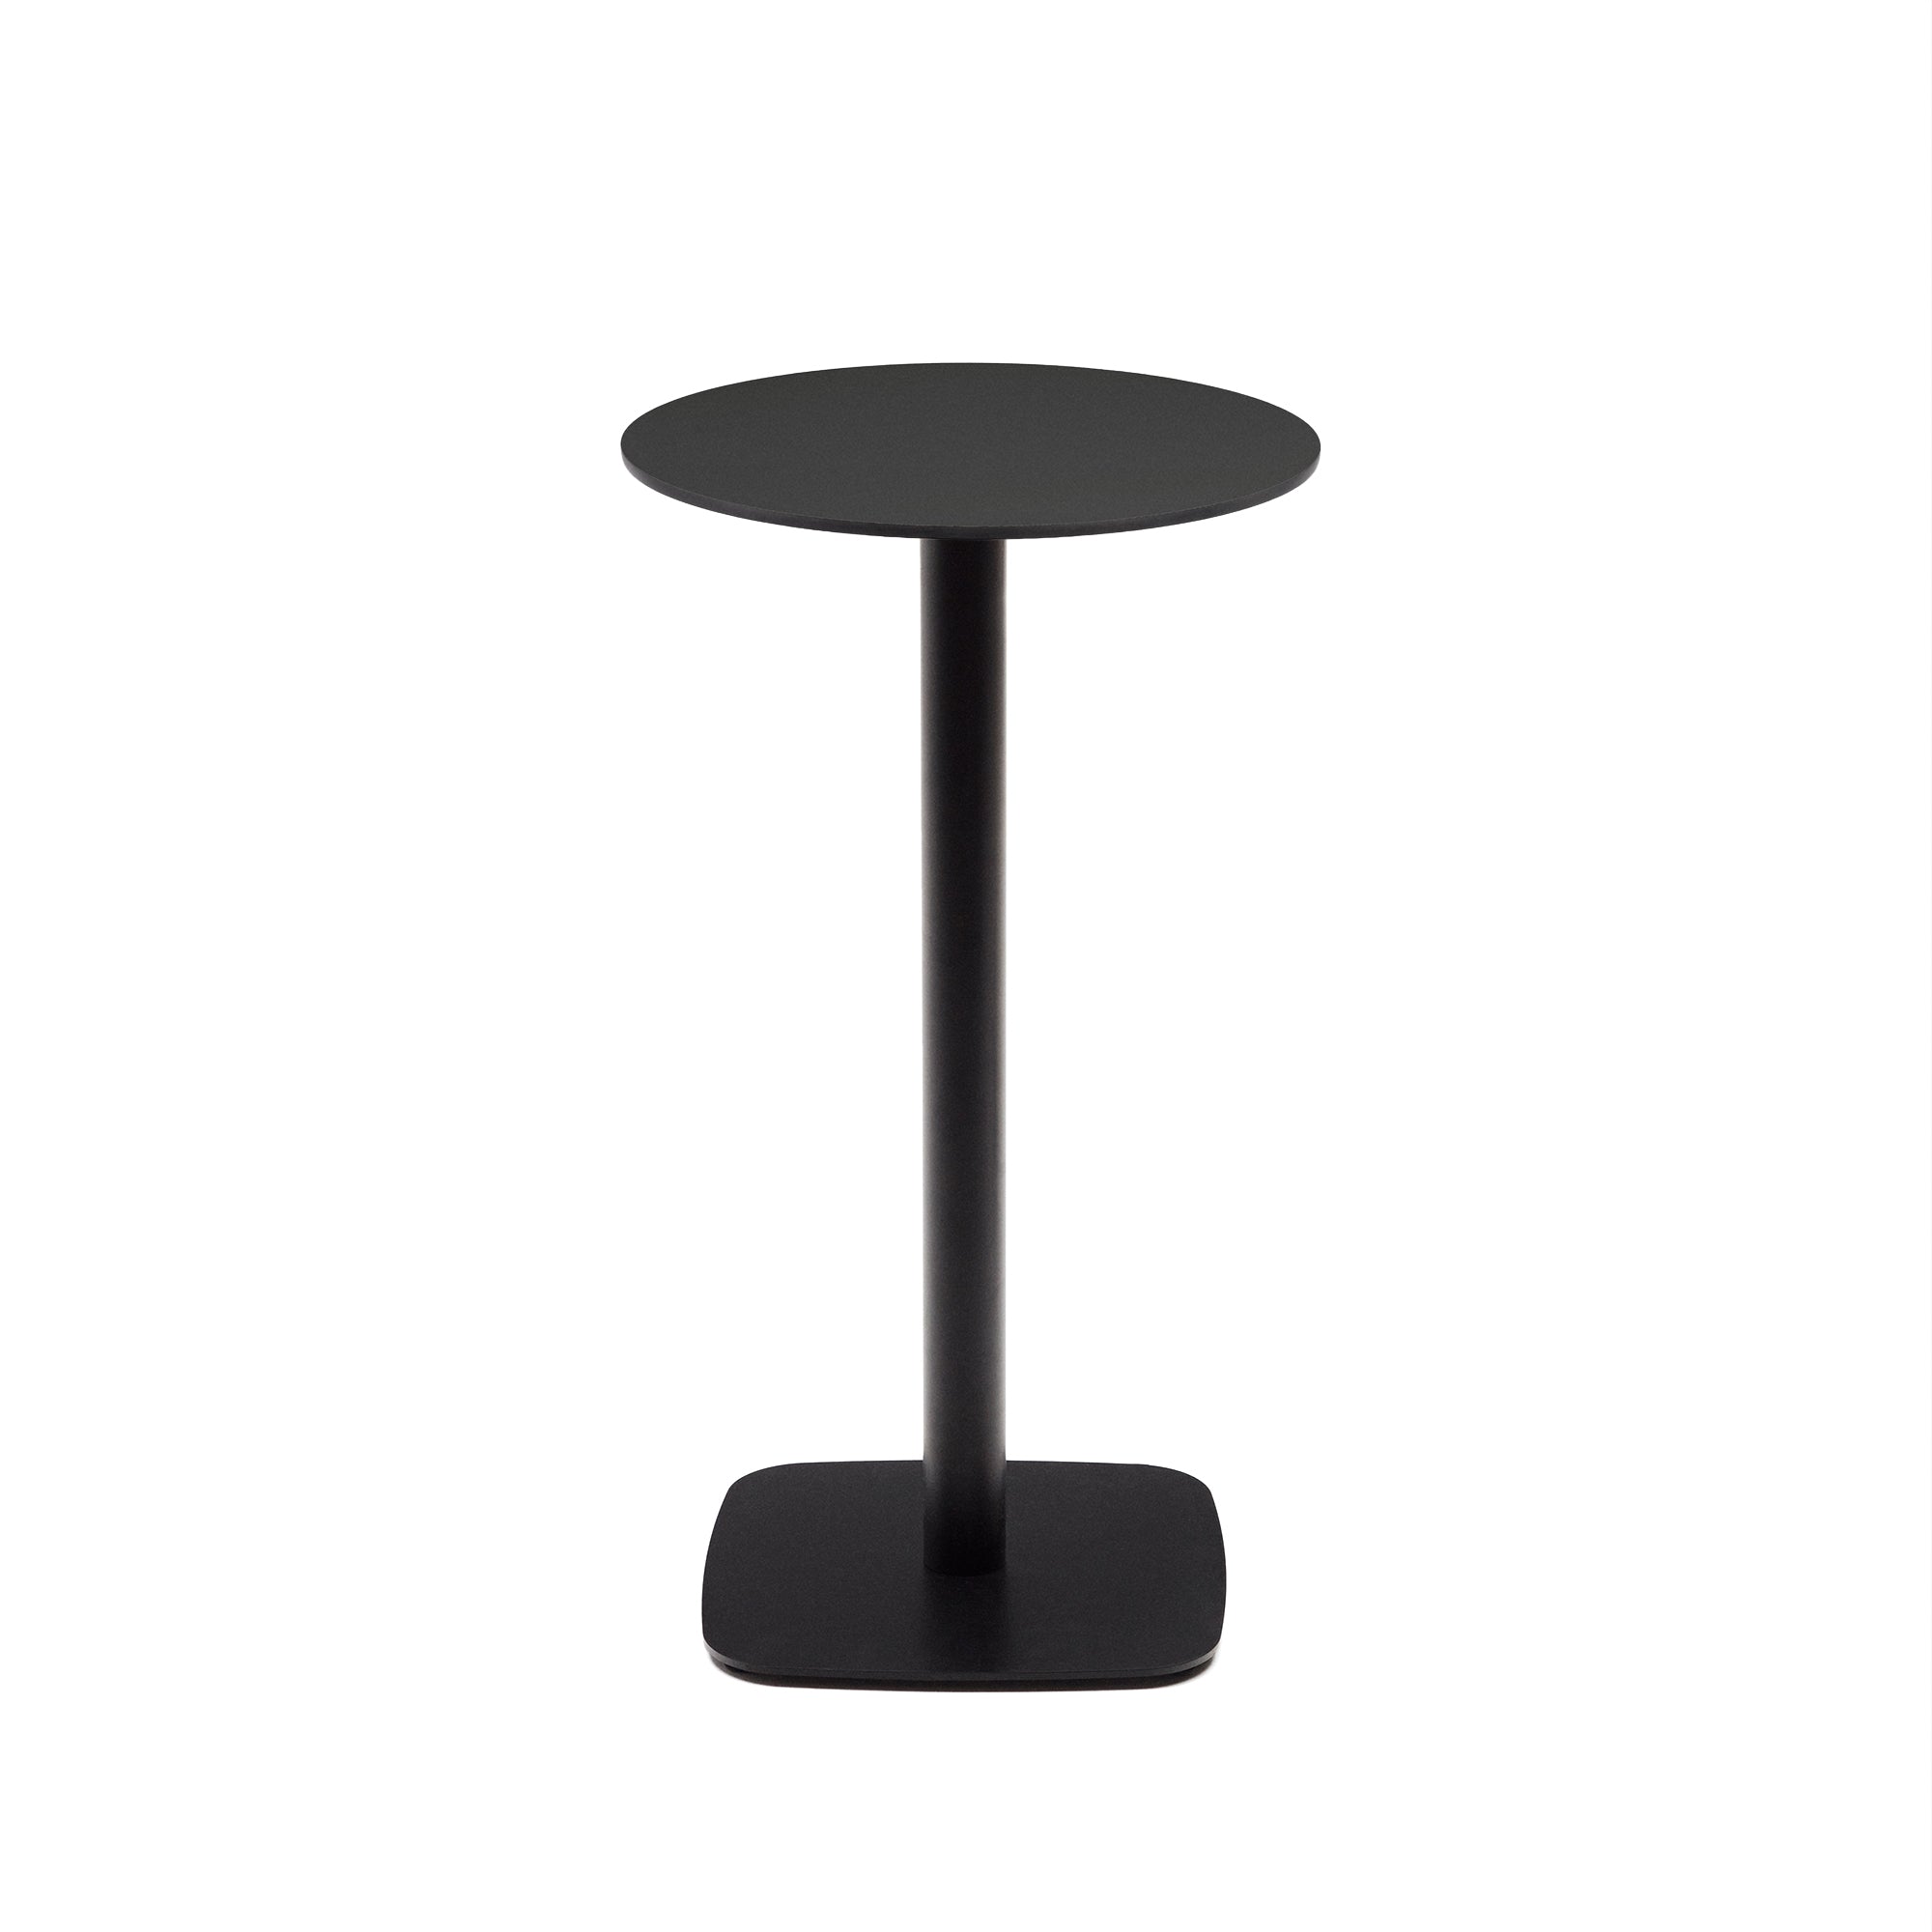 Dina magas kerek kültéri asztal fekete színben, fémlábbal, fekete színűre festve, Ø 60x96 cm